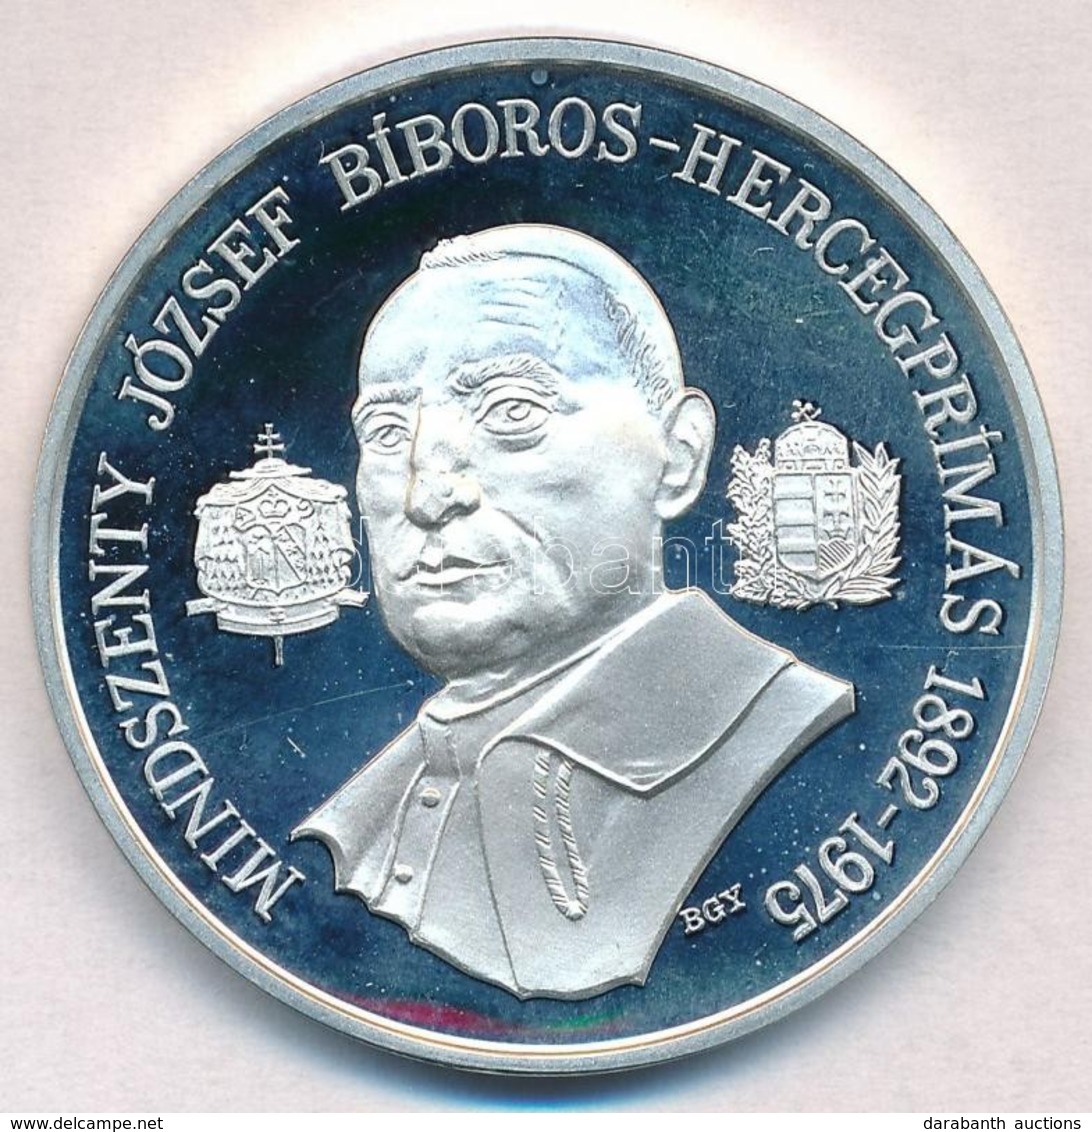 Bognár György (1944-) 1991. 'Mindszenty József Bíboros-hercegprímás 1892-1975' Jelzett Ag Emlékérem (31,1g/0.925/42,5mm) - Non Classificati